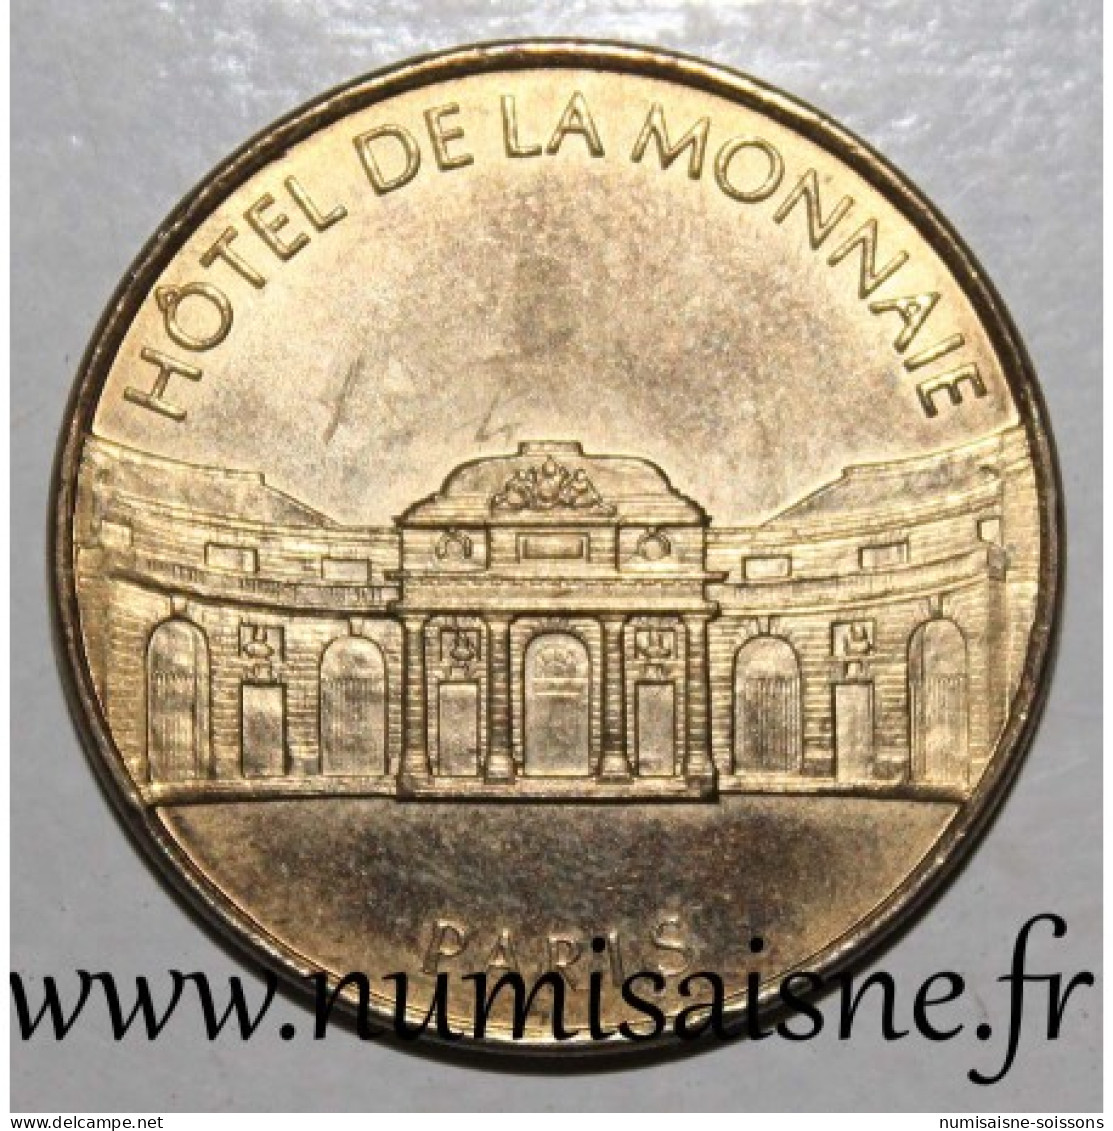 75 - PARIS - HOTEL DE LA MONNAIE - MDP - 1998 - Ohne Datum